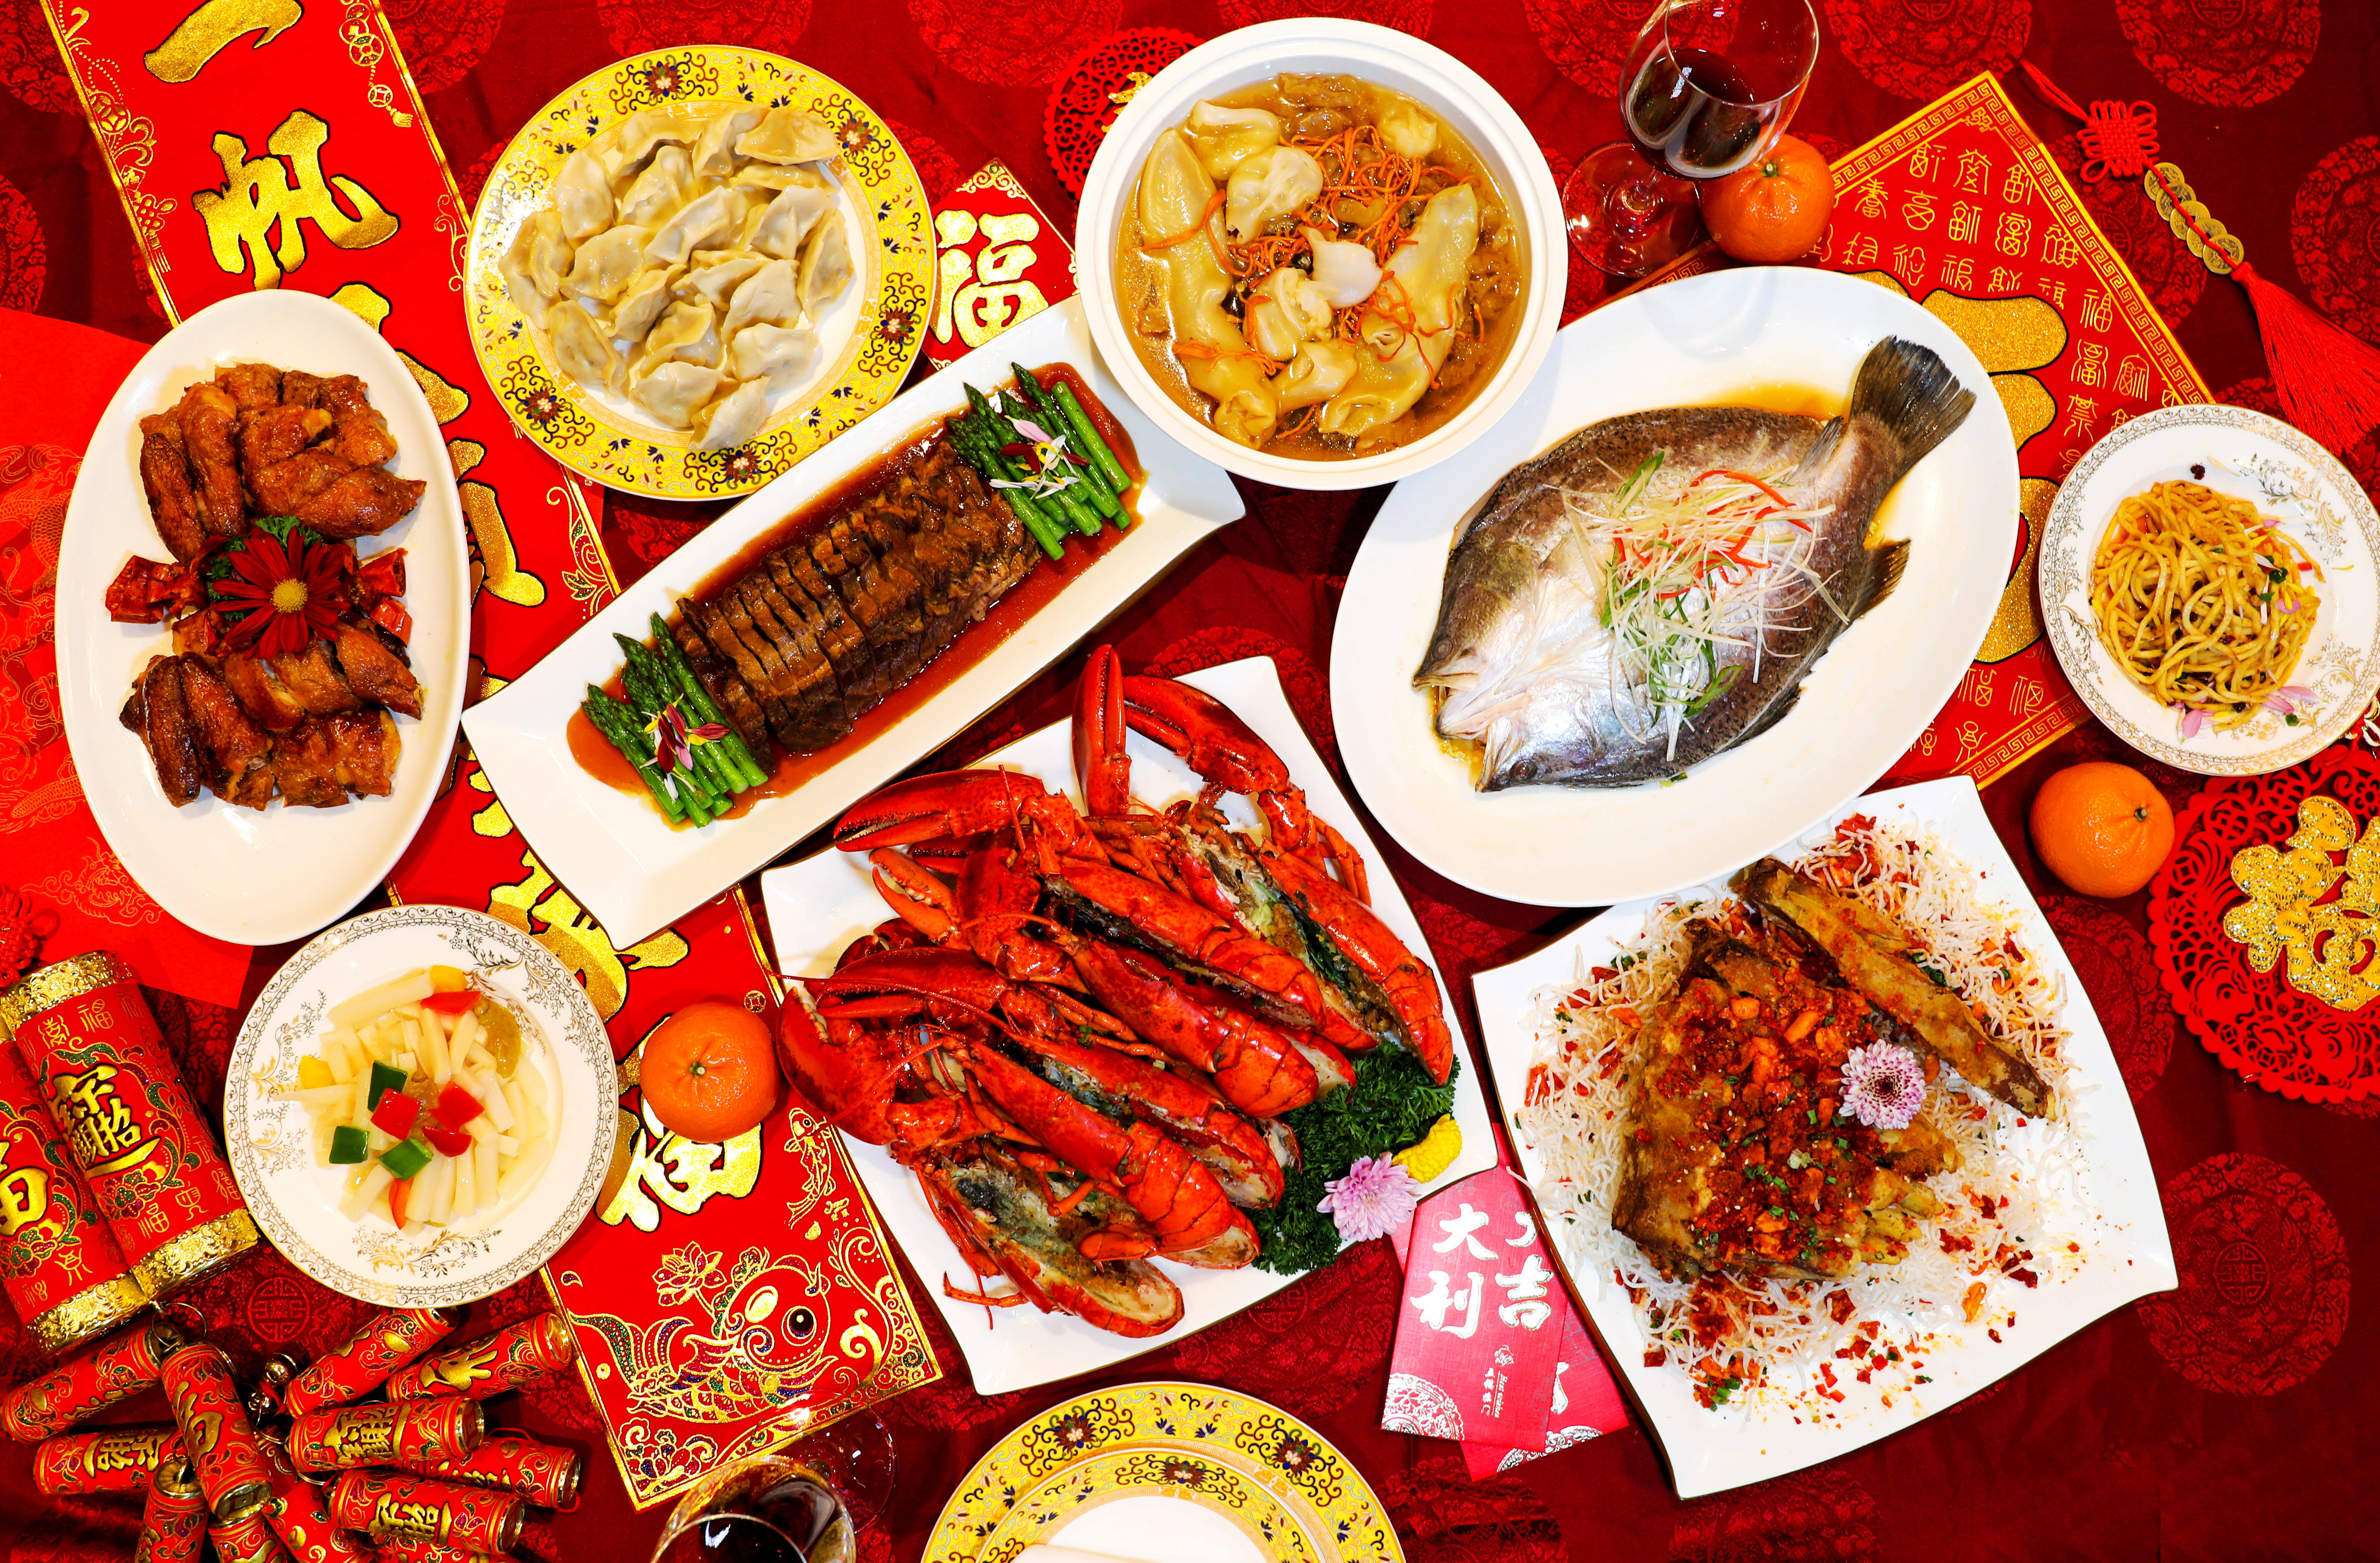 方宾客精心准备了丰盛的年夜饭,邀您与亲友一起品八珍玉食,享中国年味